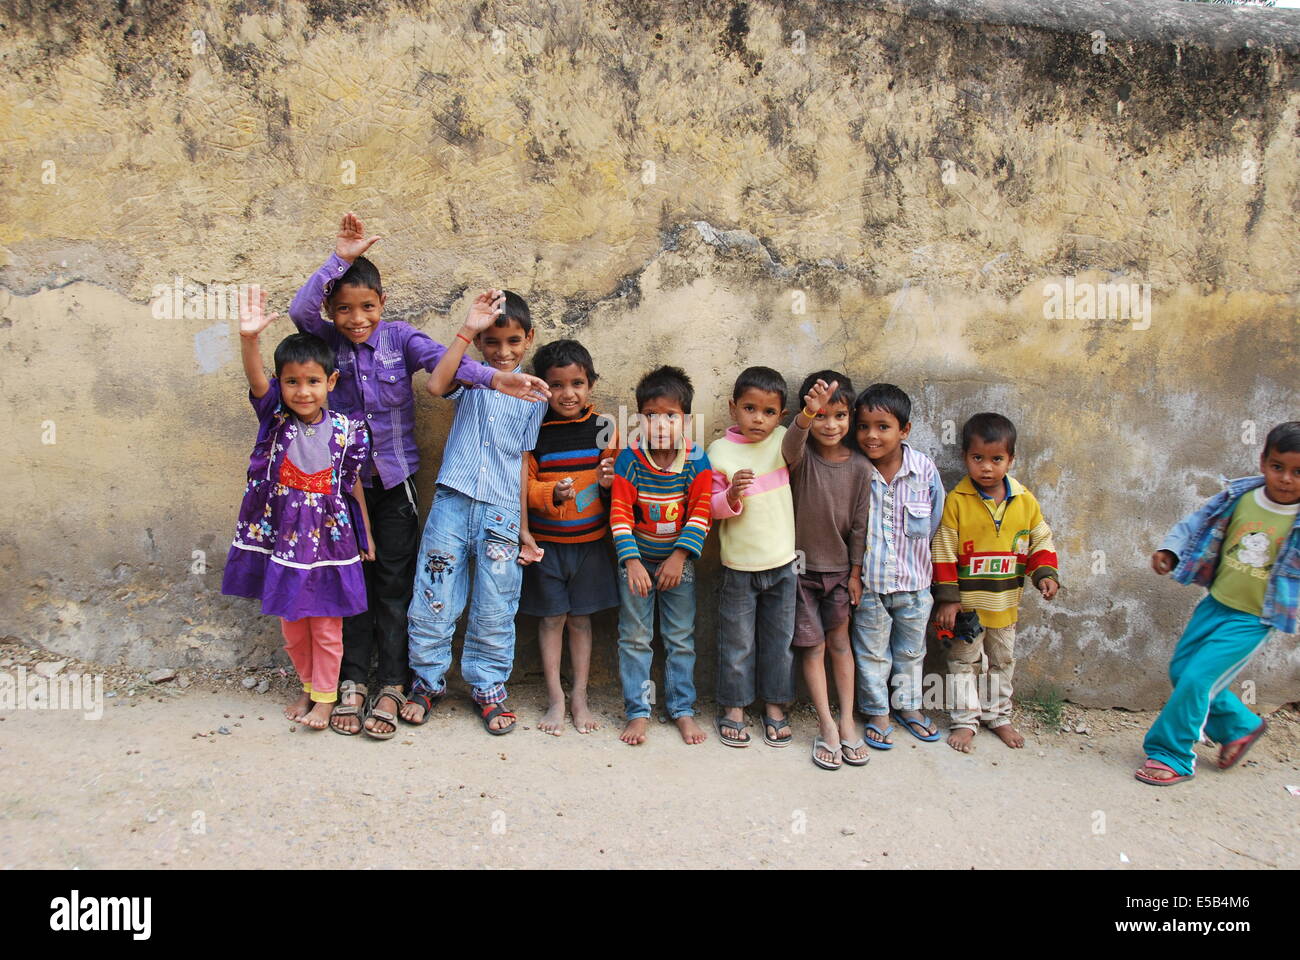 India. Il Rajasthan. I bambini del villaggio contro la parete ruvida.Una ragazza.nove ragazzi. gesticolando e sorridente. Foto Stock